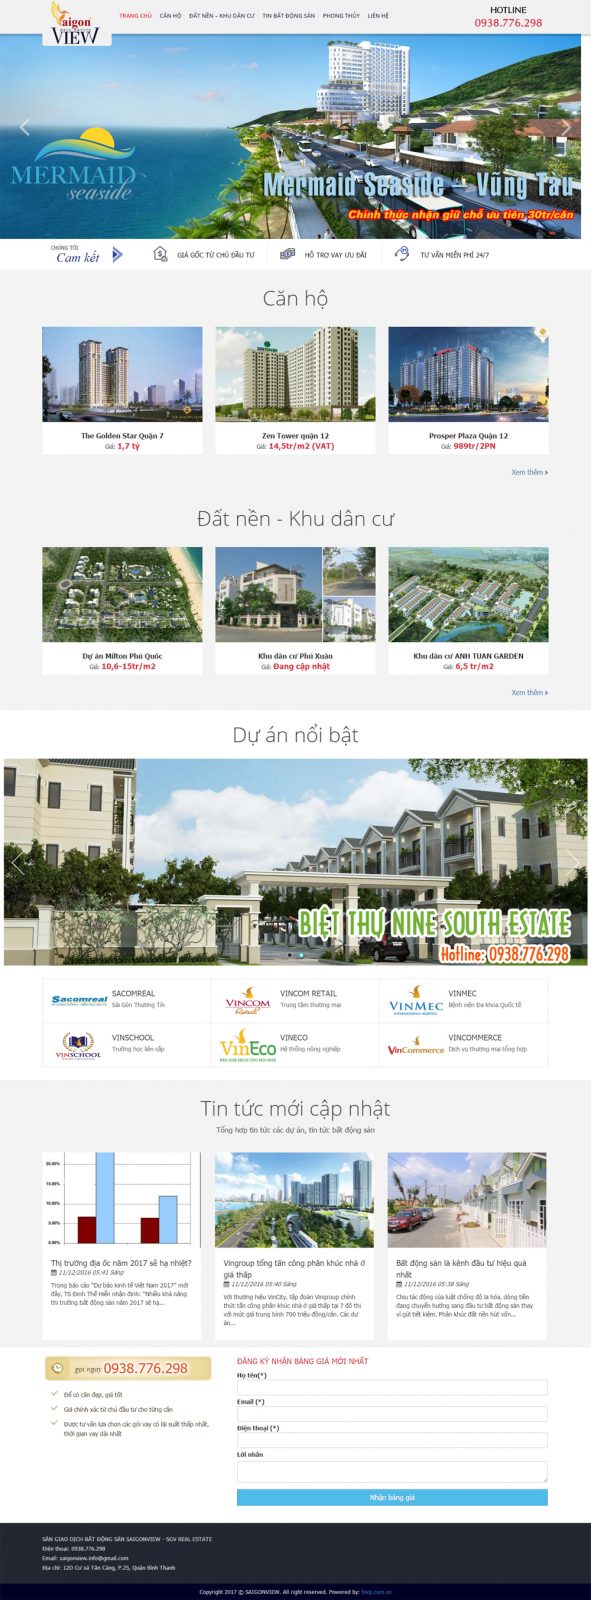 Thiết kế web bất động sản SAIGON VIEW